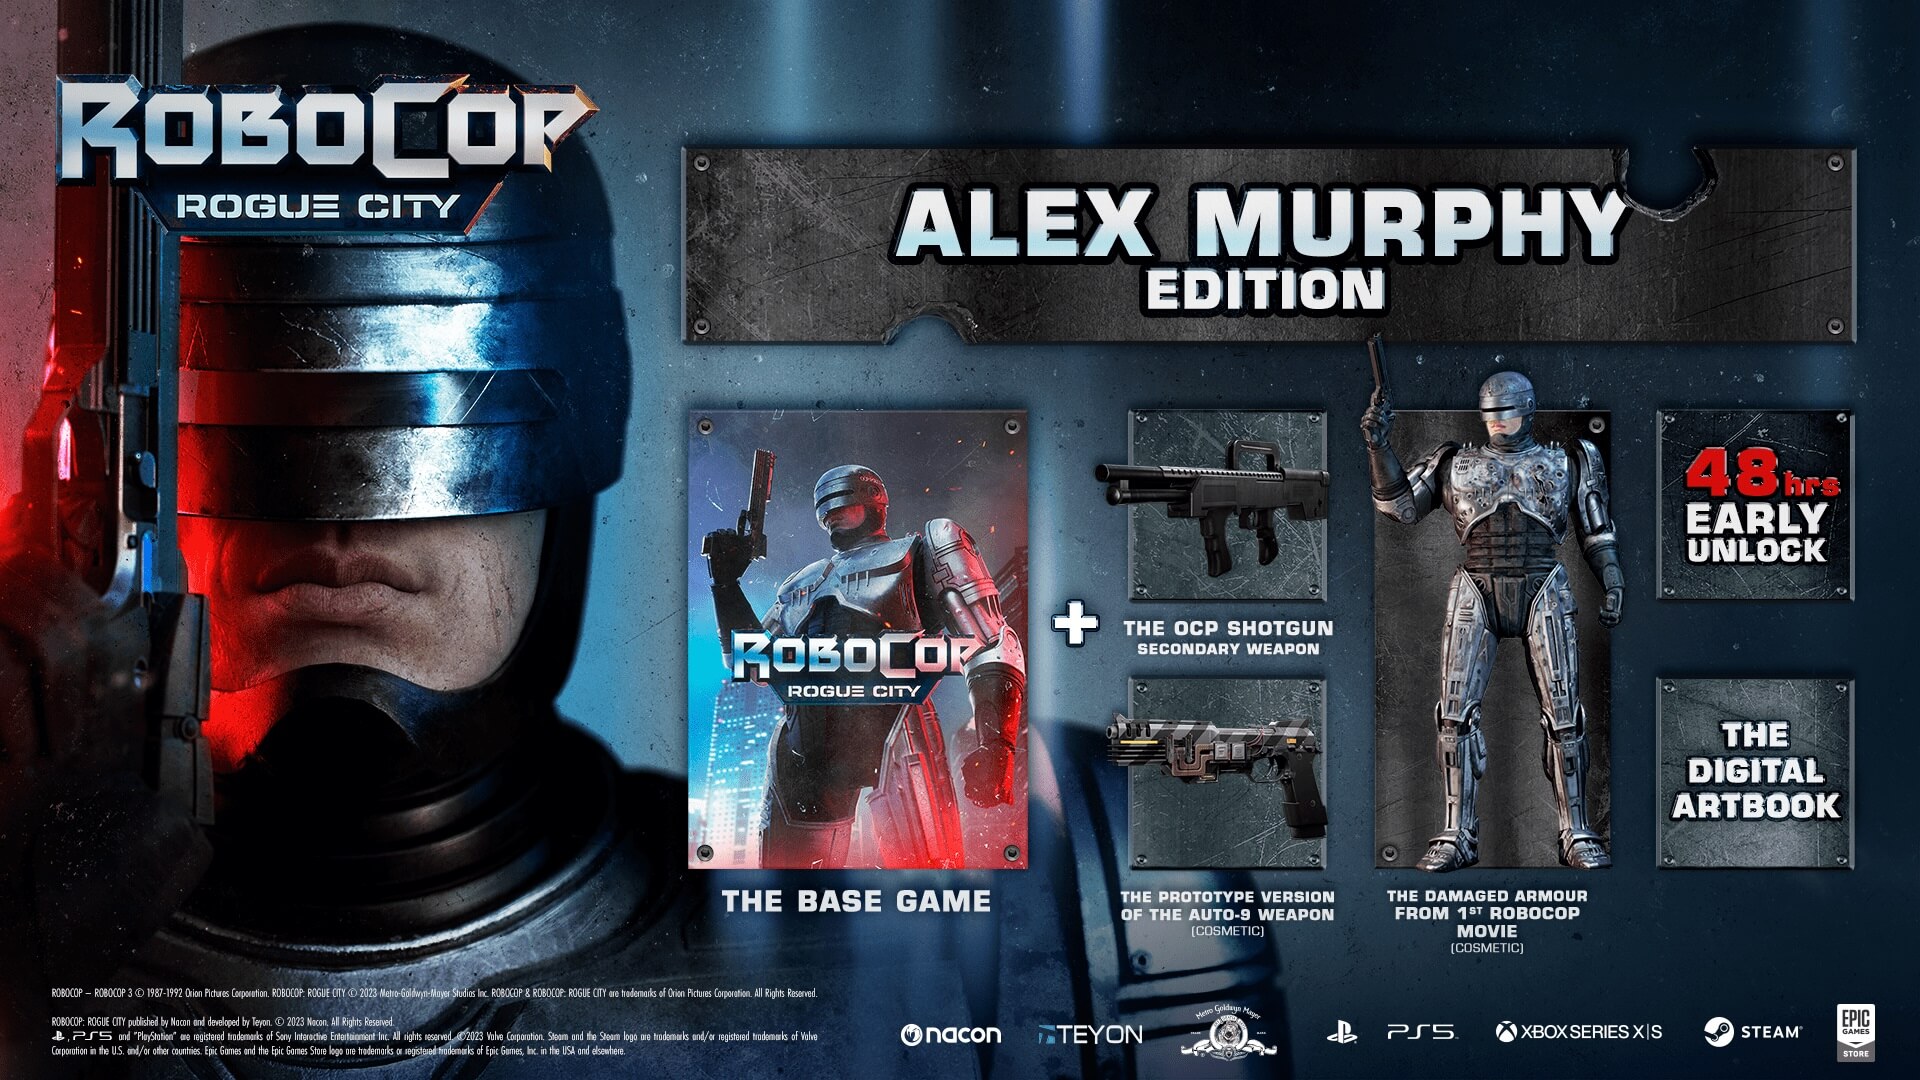 (26.81$) Robocop: Rogue City Alex Murphy Edition Steam CD Key